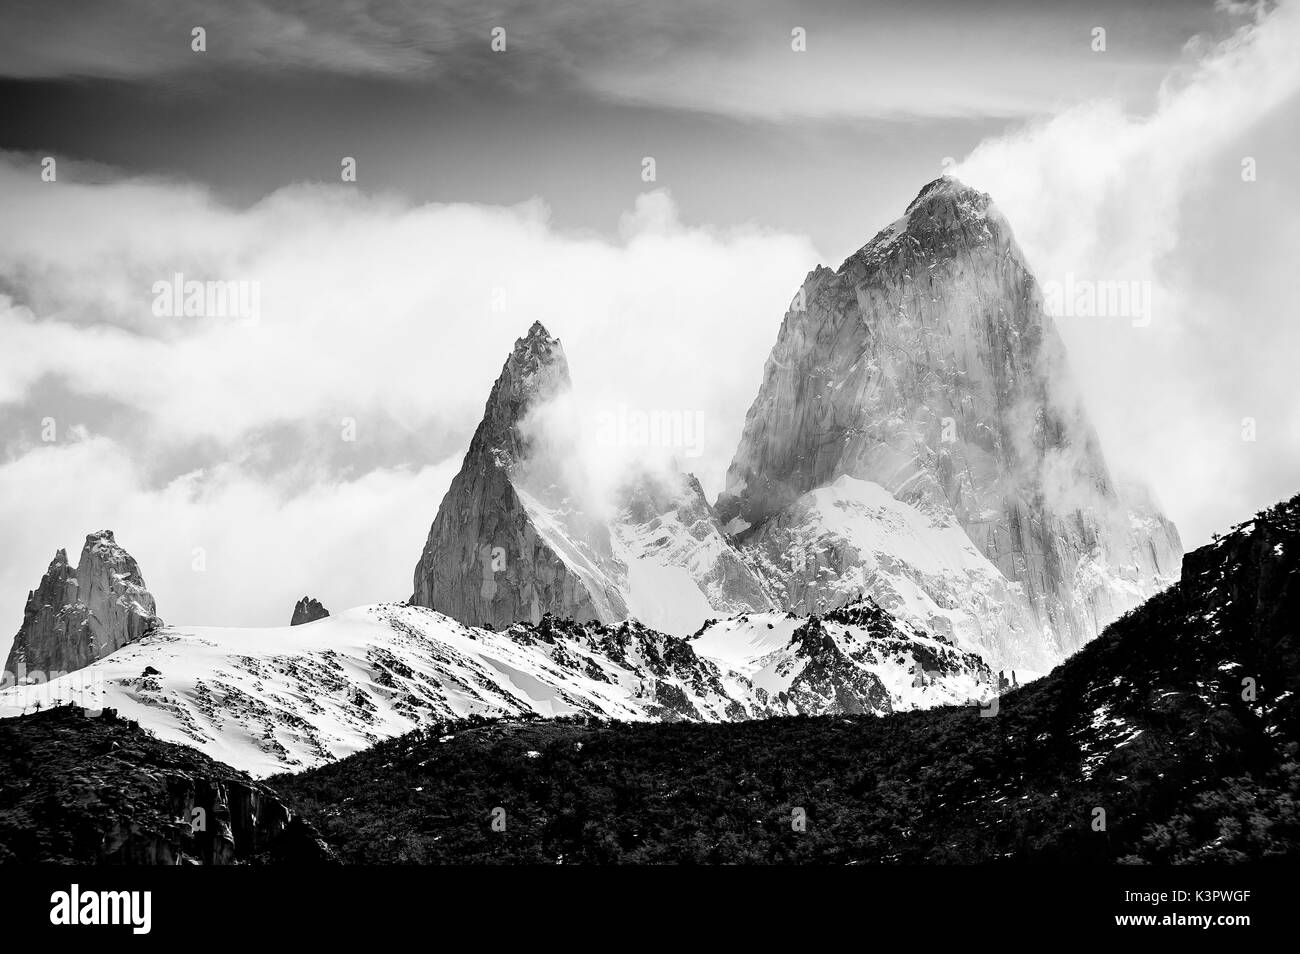 El Chaltén, Nationalpark Los Glaciares, Patagonien, Argentinien, Südamerika. Der Fitz Roy Berg in den Wolken in Schwarz und Weiß. Stockfoto